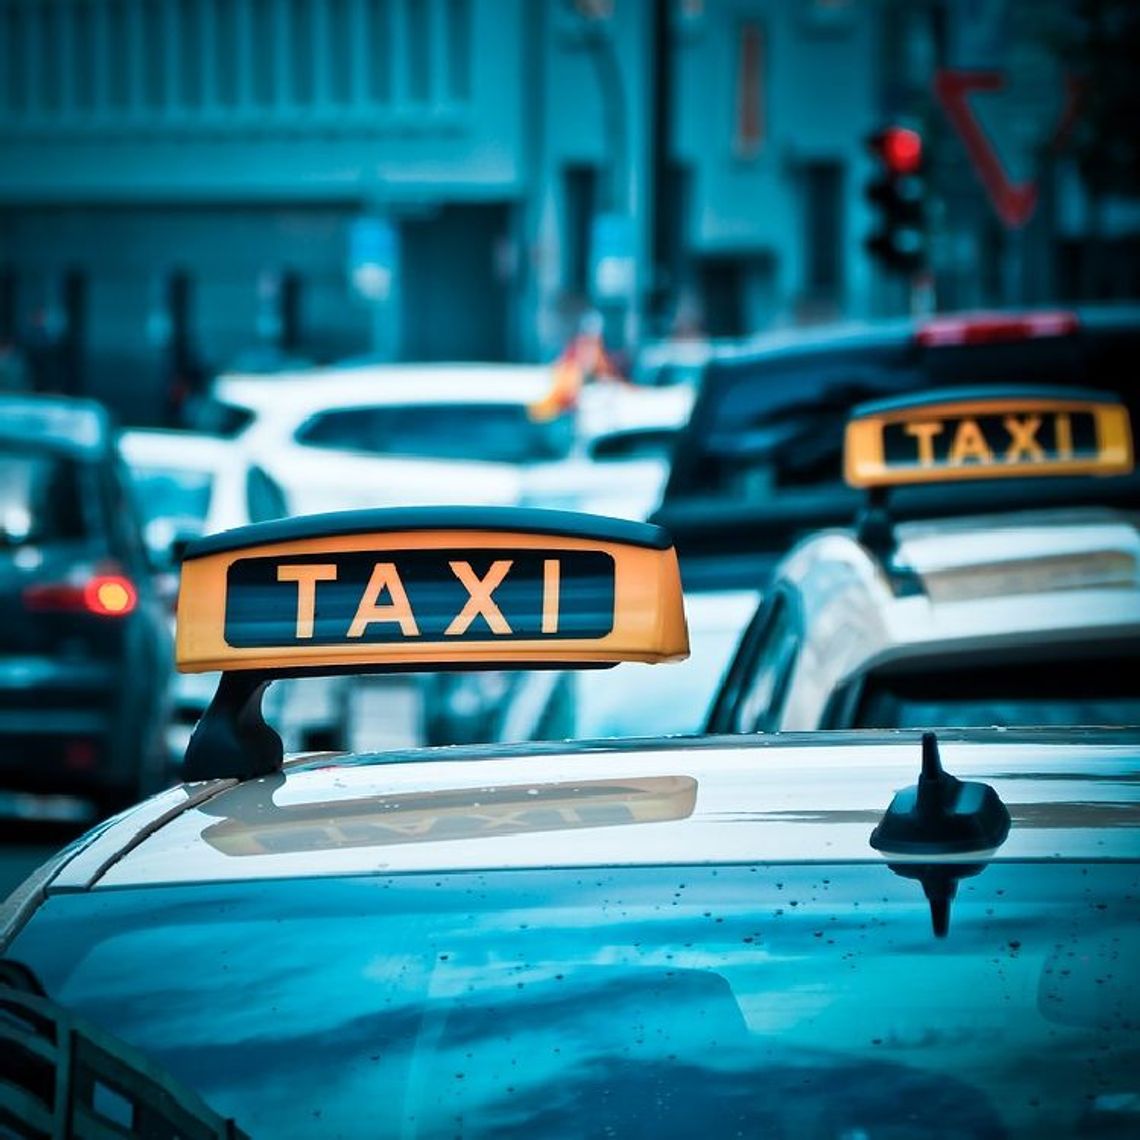 Aplikacja Taxify dostępna w Bydgoszczy